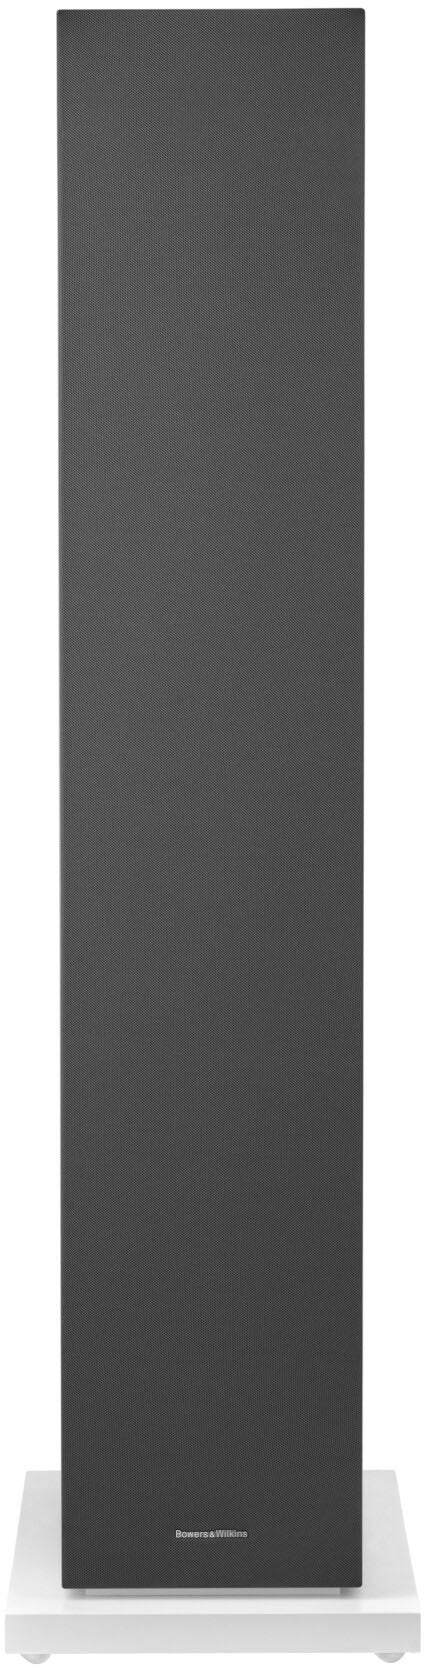 Bowers & Wilkins - 600 S3 Series 3-Way Floorstanding Loudspeaker (Each) - White_3